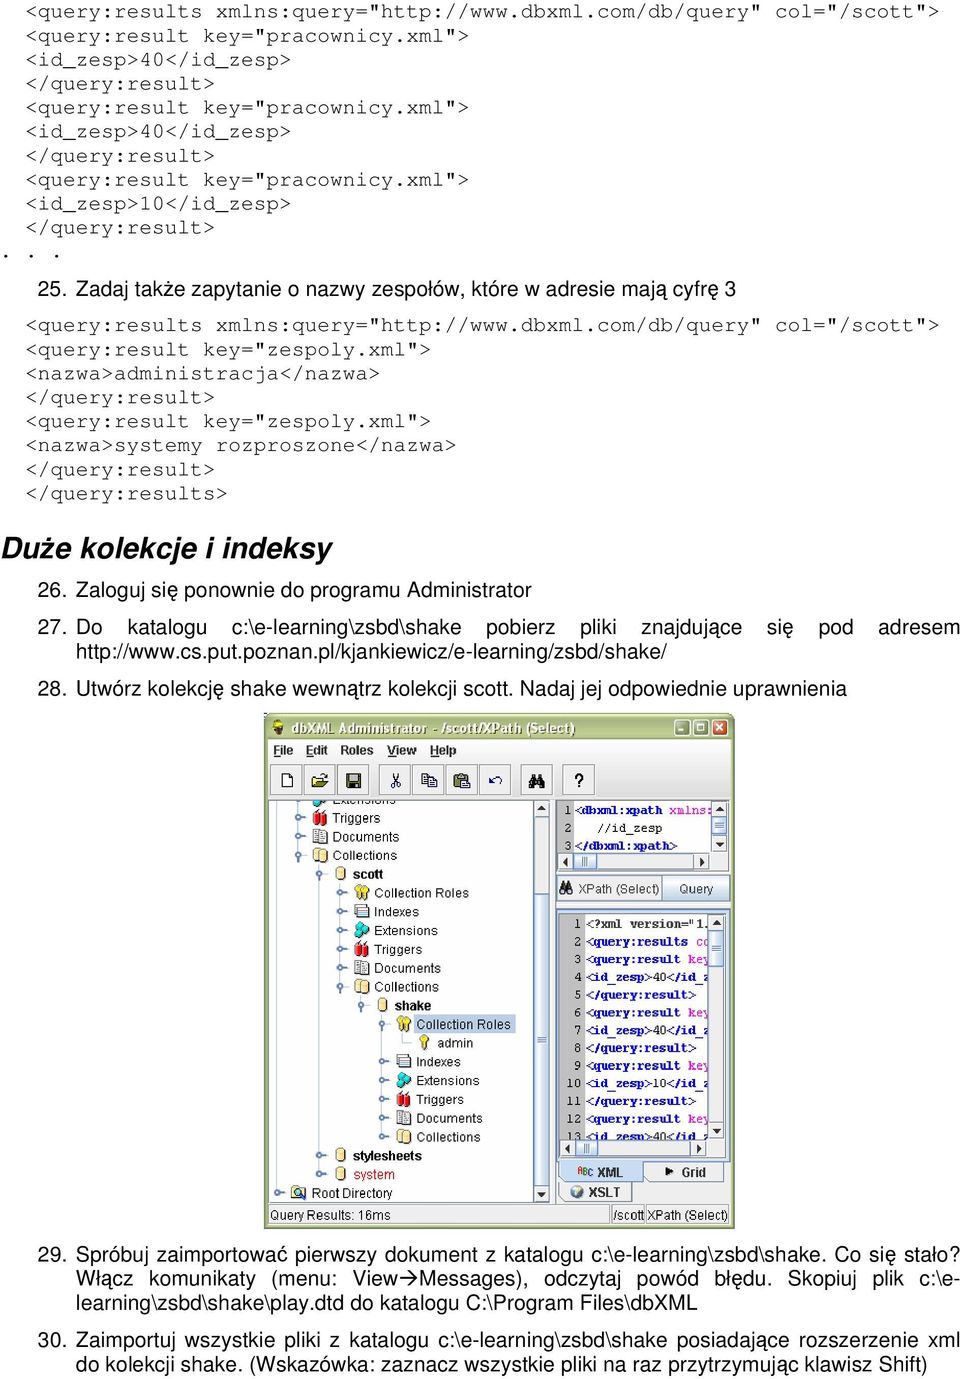 Zadaj także zapytanie o nazwy zespołów, które w adresie mają cyfrę 3 <query:results xmlns:query="http://www.dbxml.com/db/query" col="/scott"> <query:result key="zespoly.